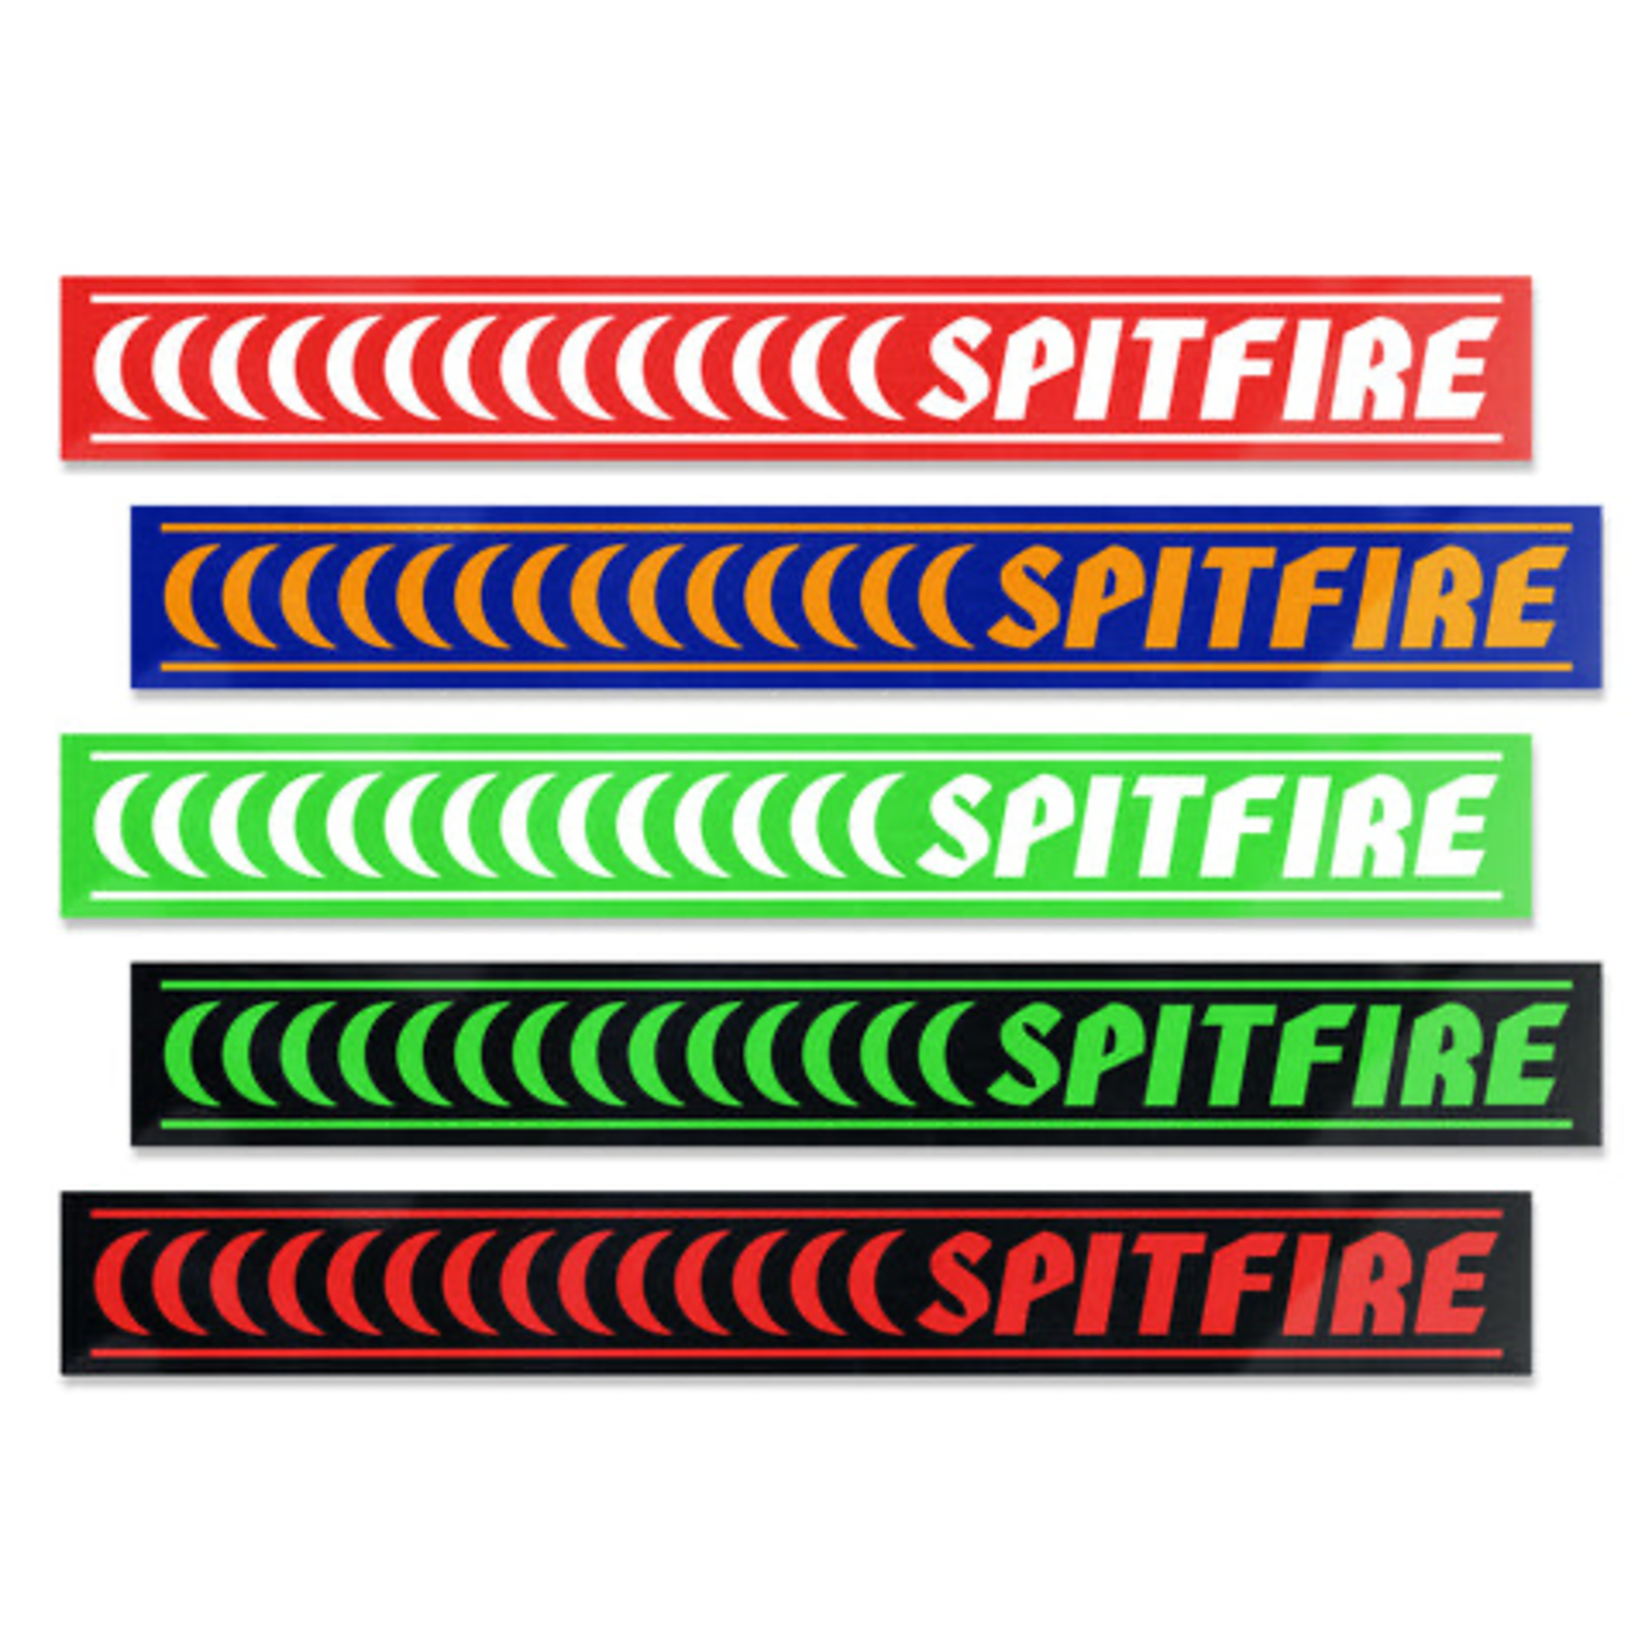 Spitfire Spitfire Barred Sticker - Medium